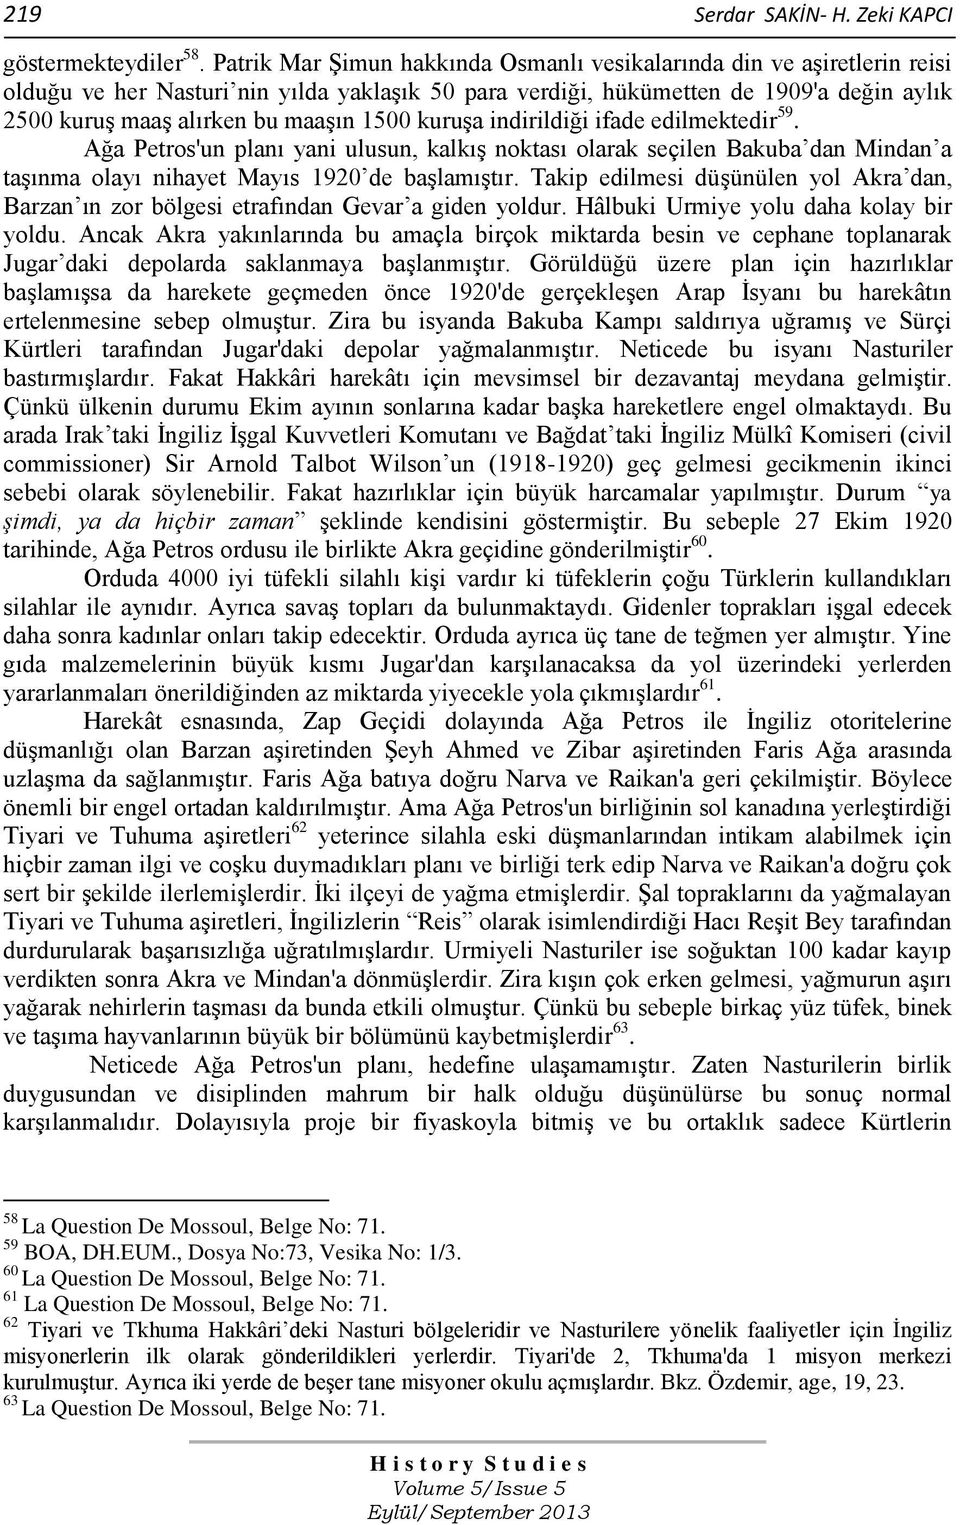 1500 kuruşa indirildiği ifade edilmektedir 59. Ağa Petros'un planı yani ulusun, kalkış noktası olarak seçilen Bakuba dan Mindan a taşınma olayı nihayet Mayıs 1920 de başlamıştır.